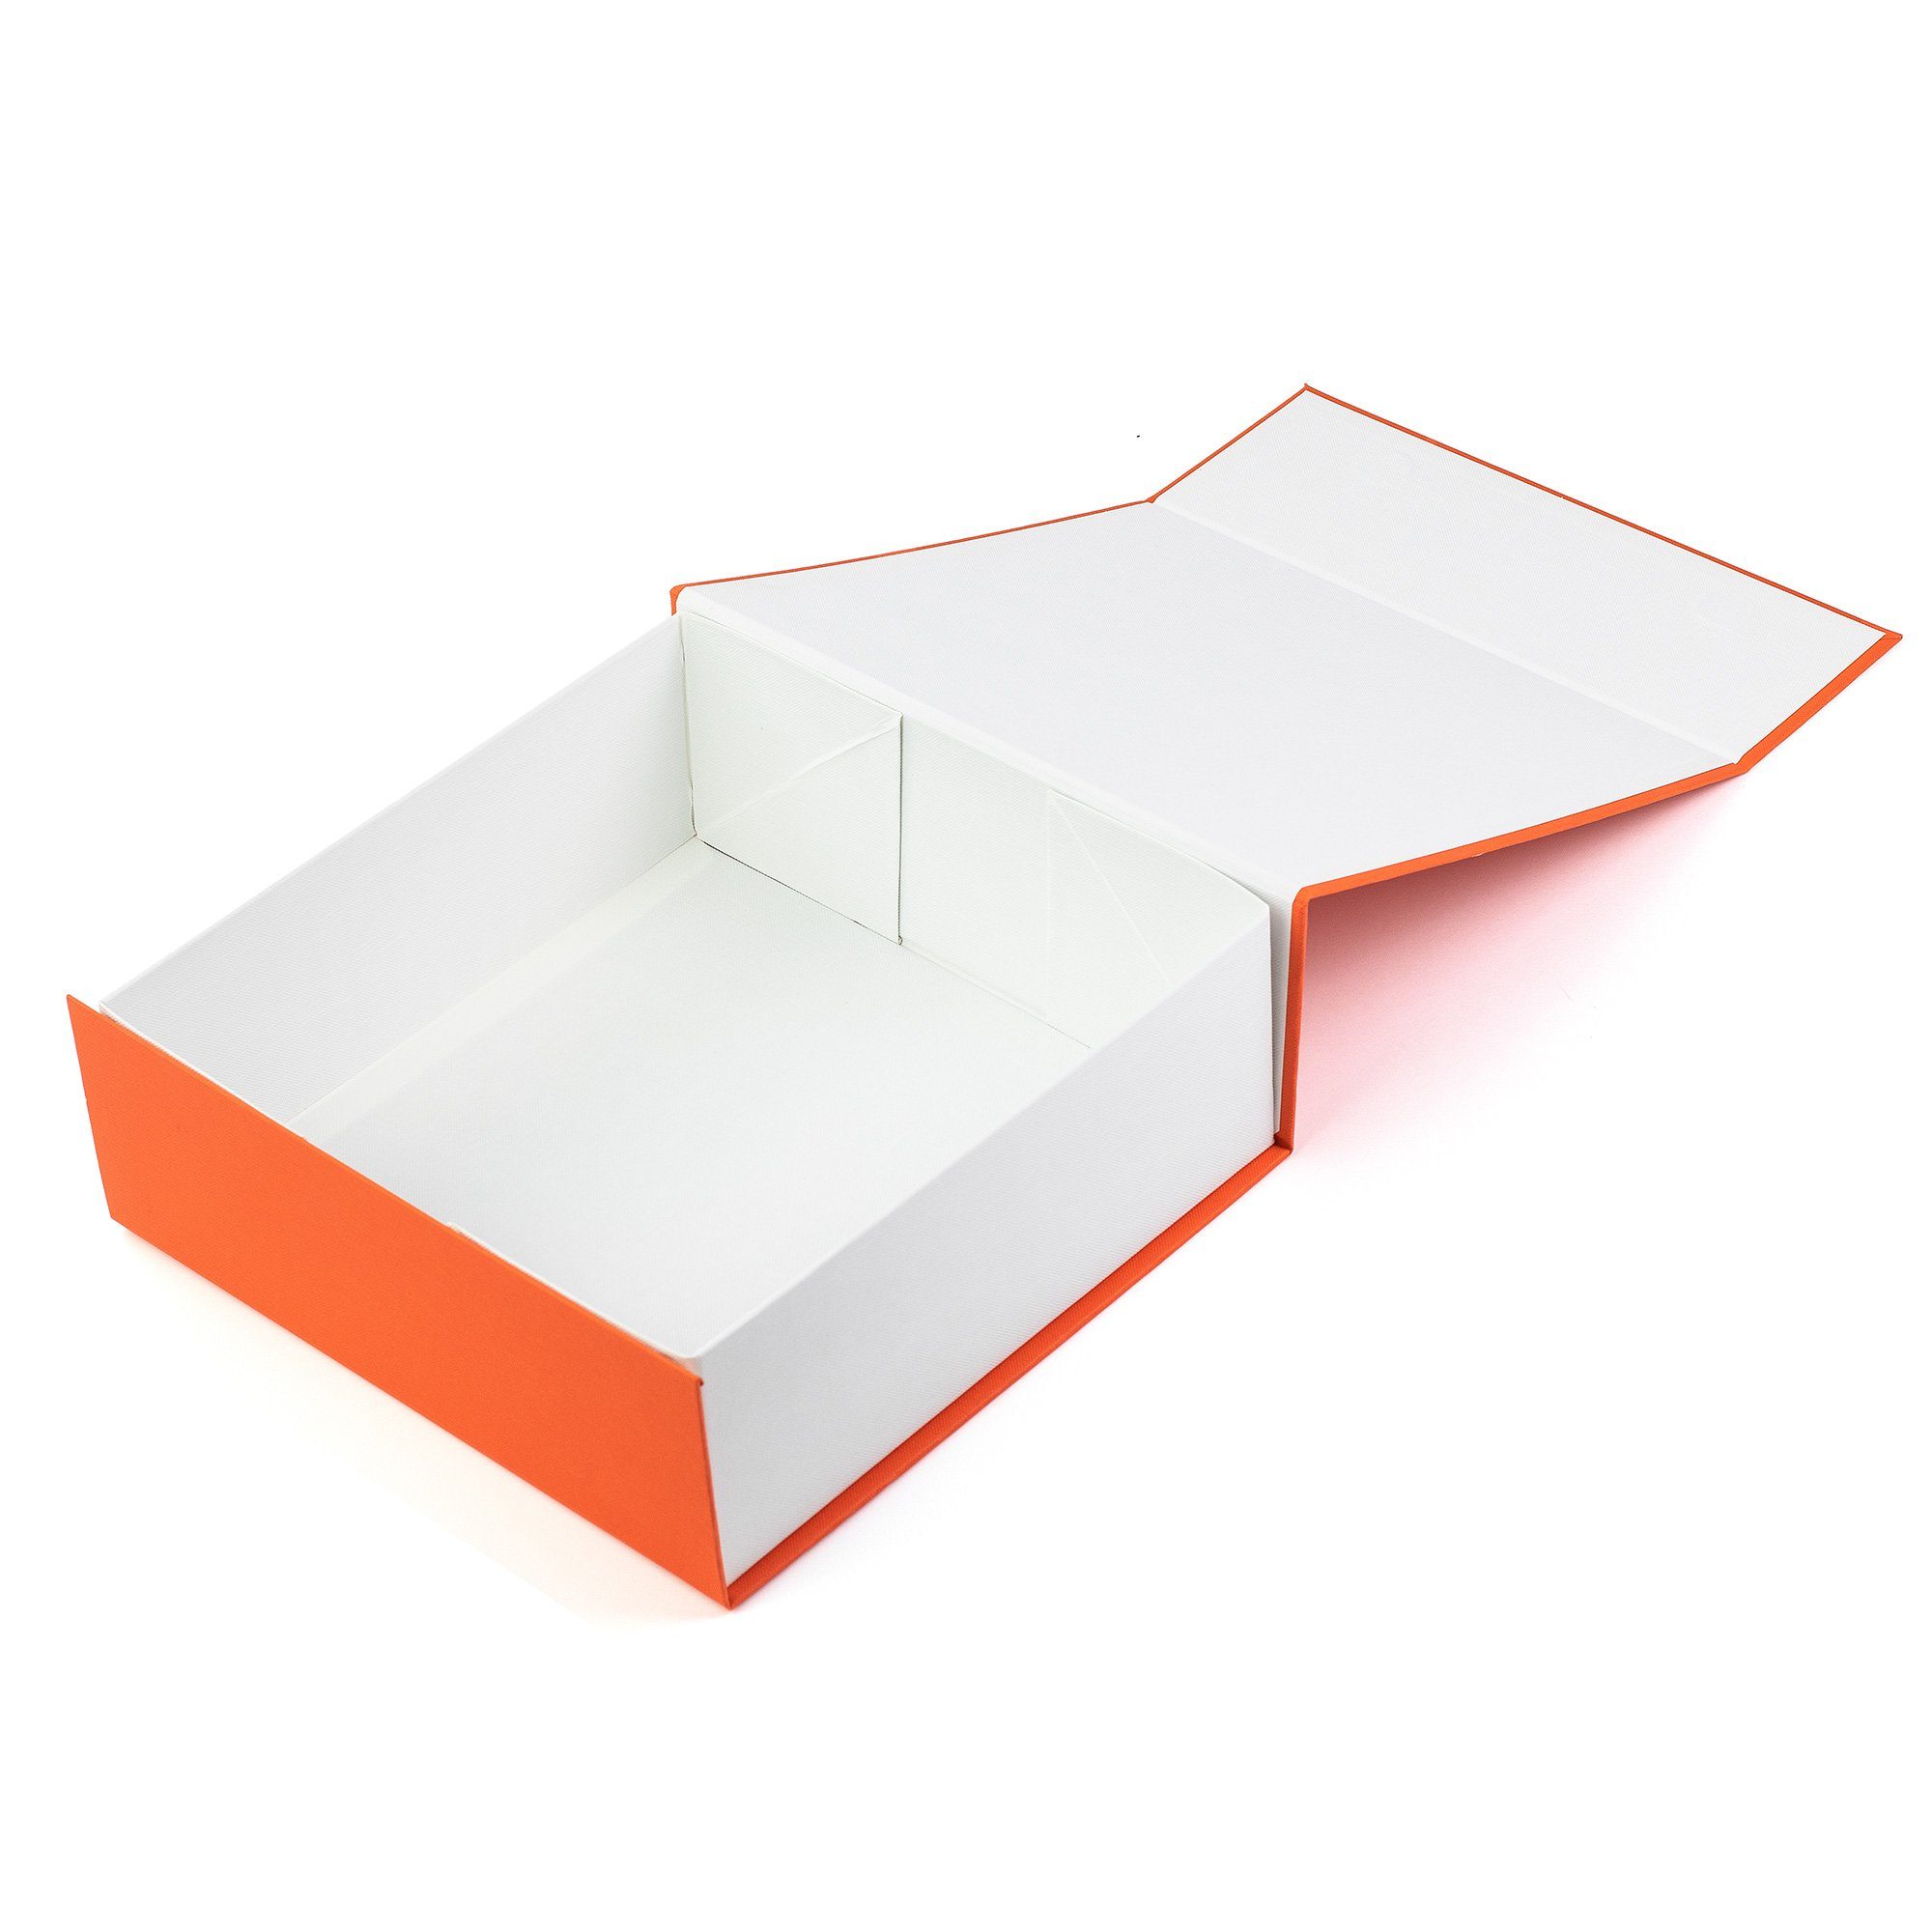 und Geschenkbox Rechteck mit Geburtstagsgeschenk Magnet Hochzeiten, Orange Aufbewahrungsbox Deckel Geschenkbox AdelDream und für Babybrautjungfer